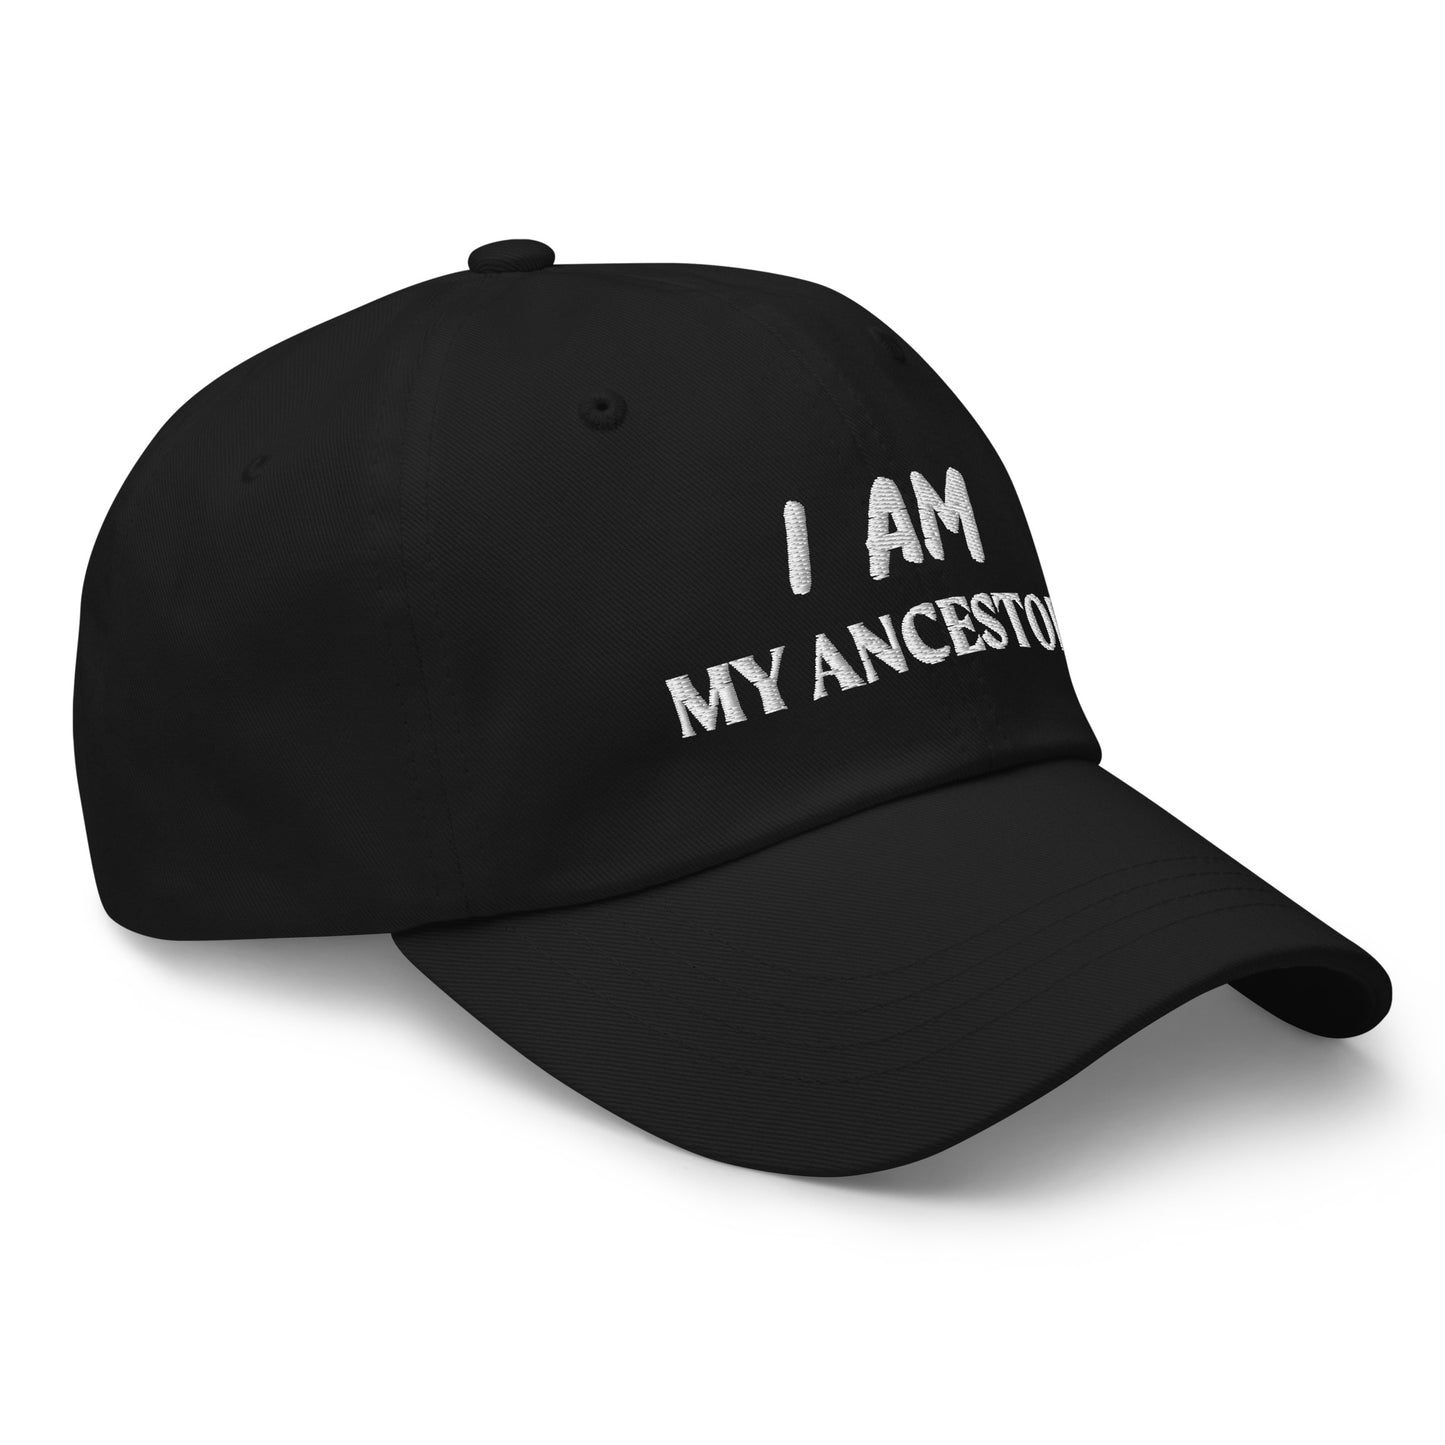 I Am My Ancestors Hat